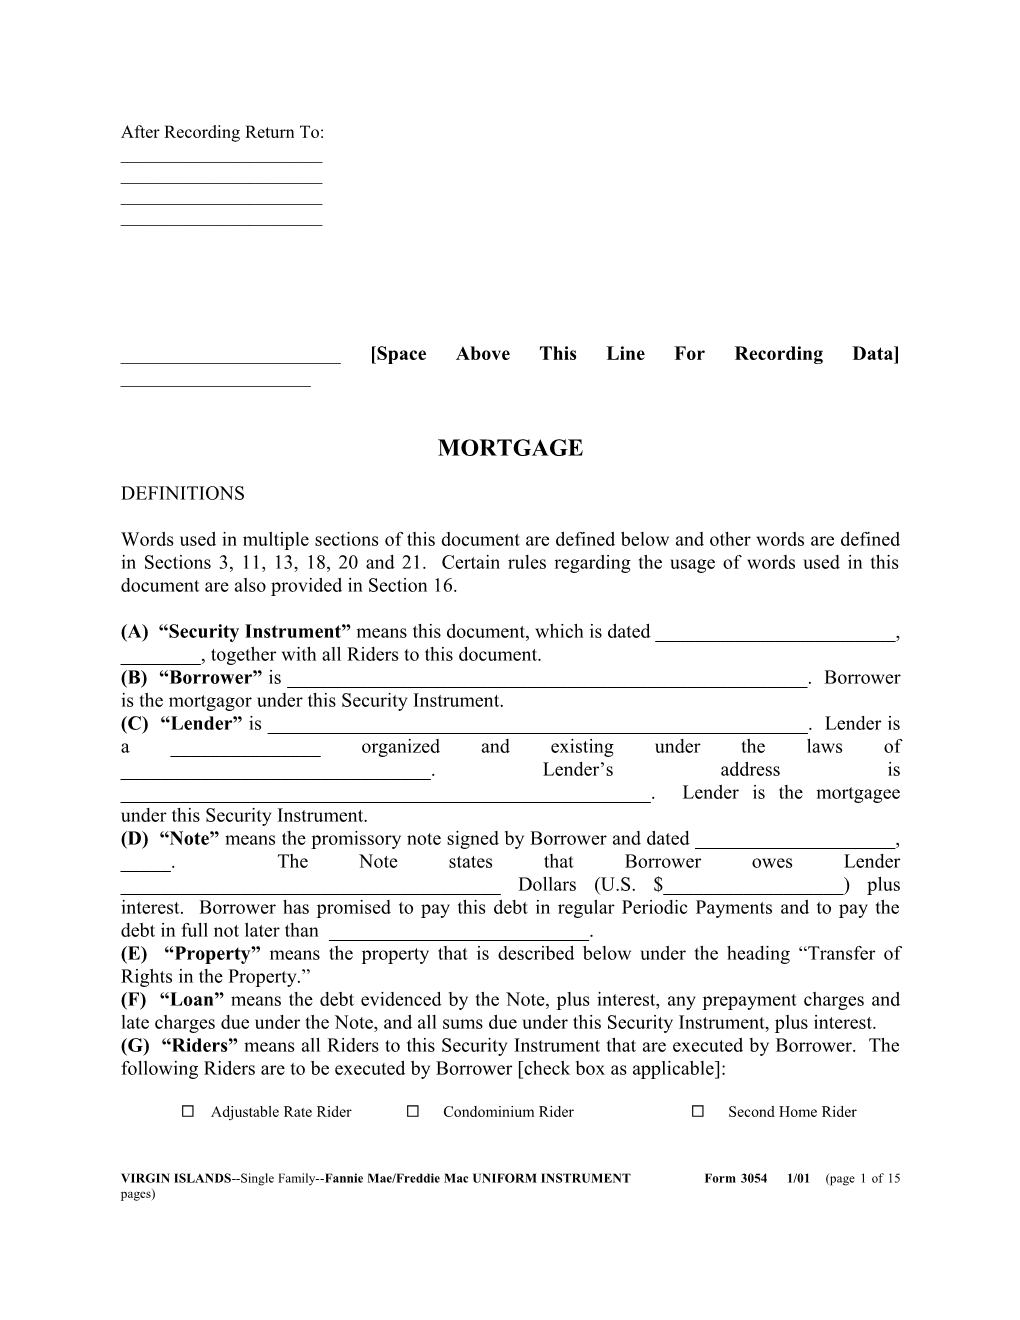 Virgin Islands Security Instrument (Form 3054): Word